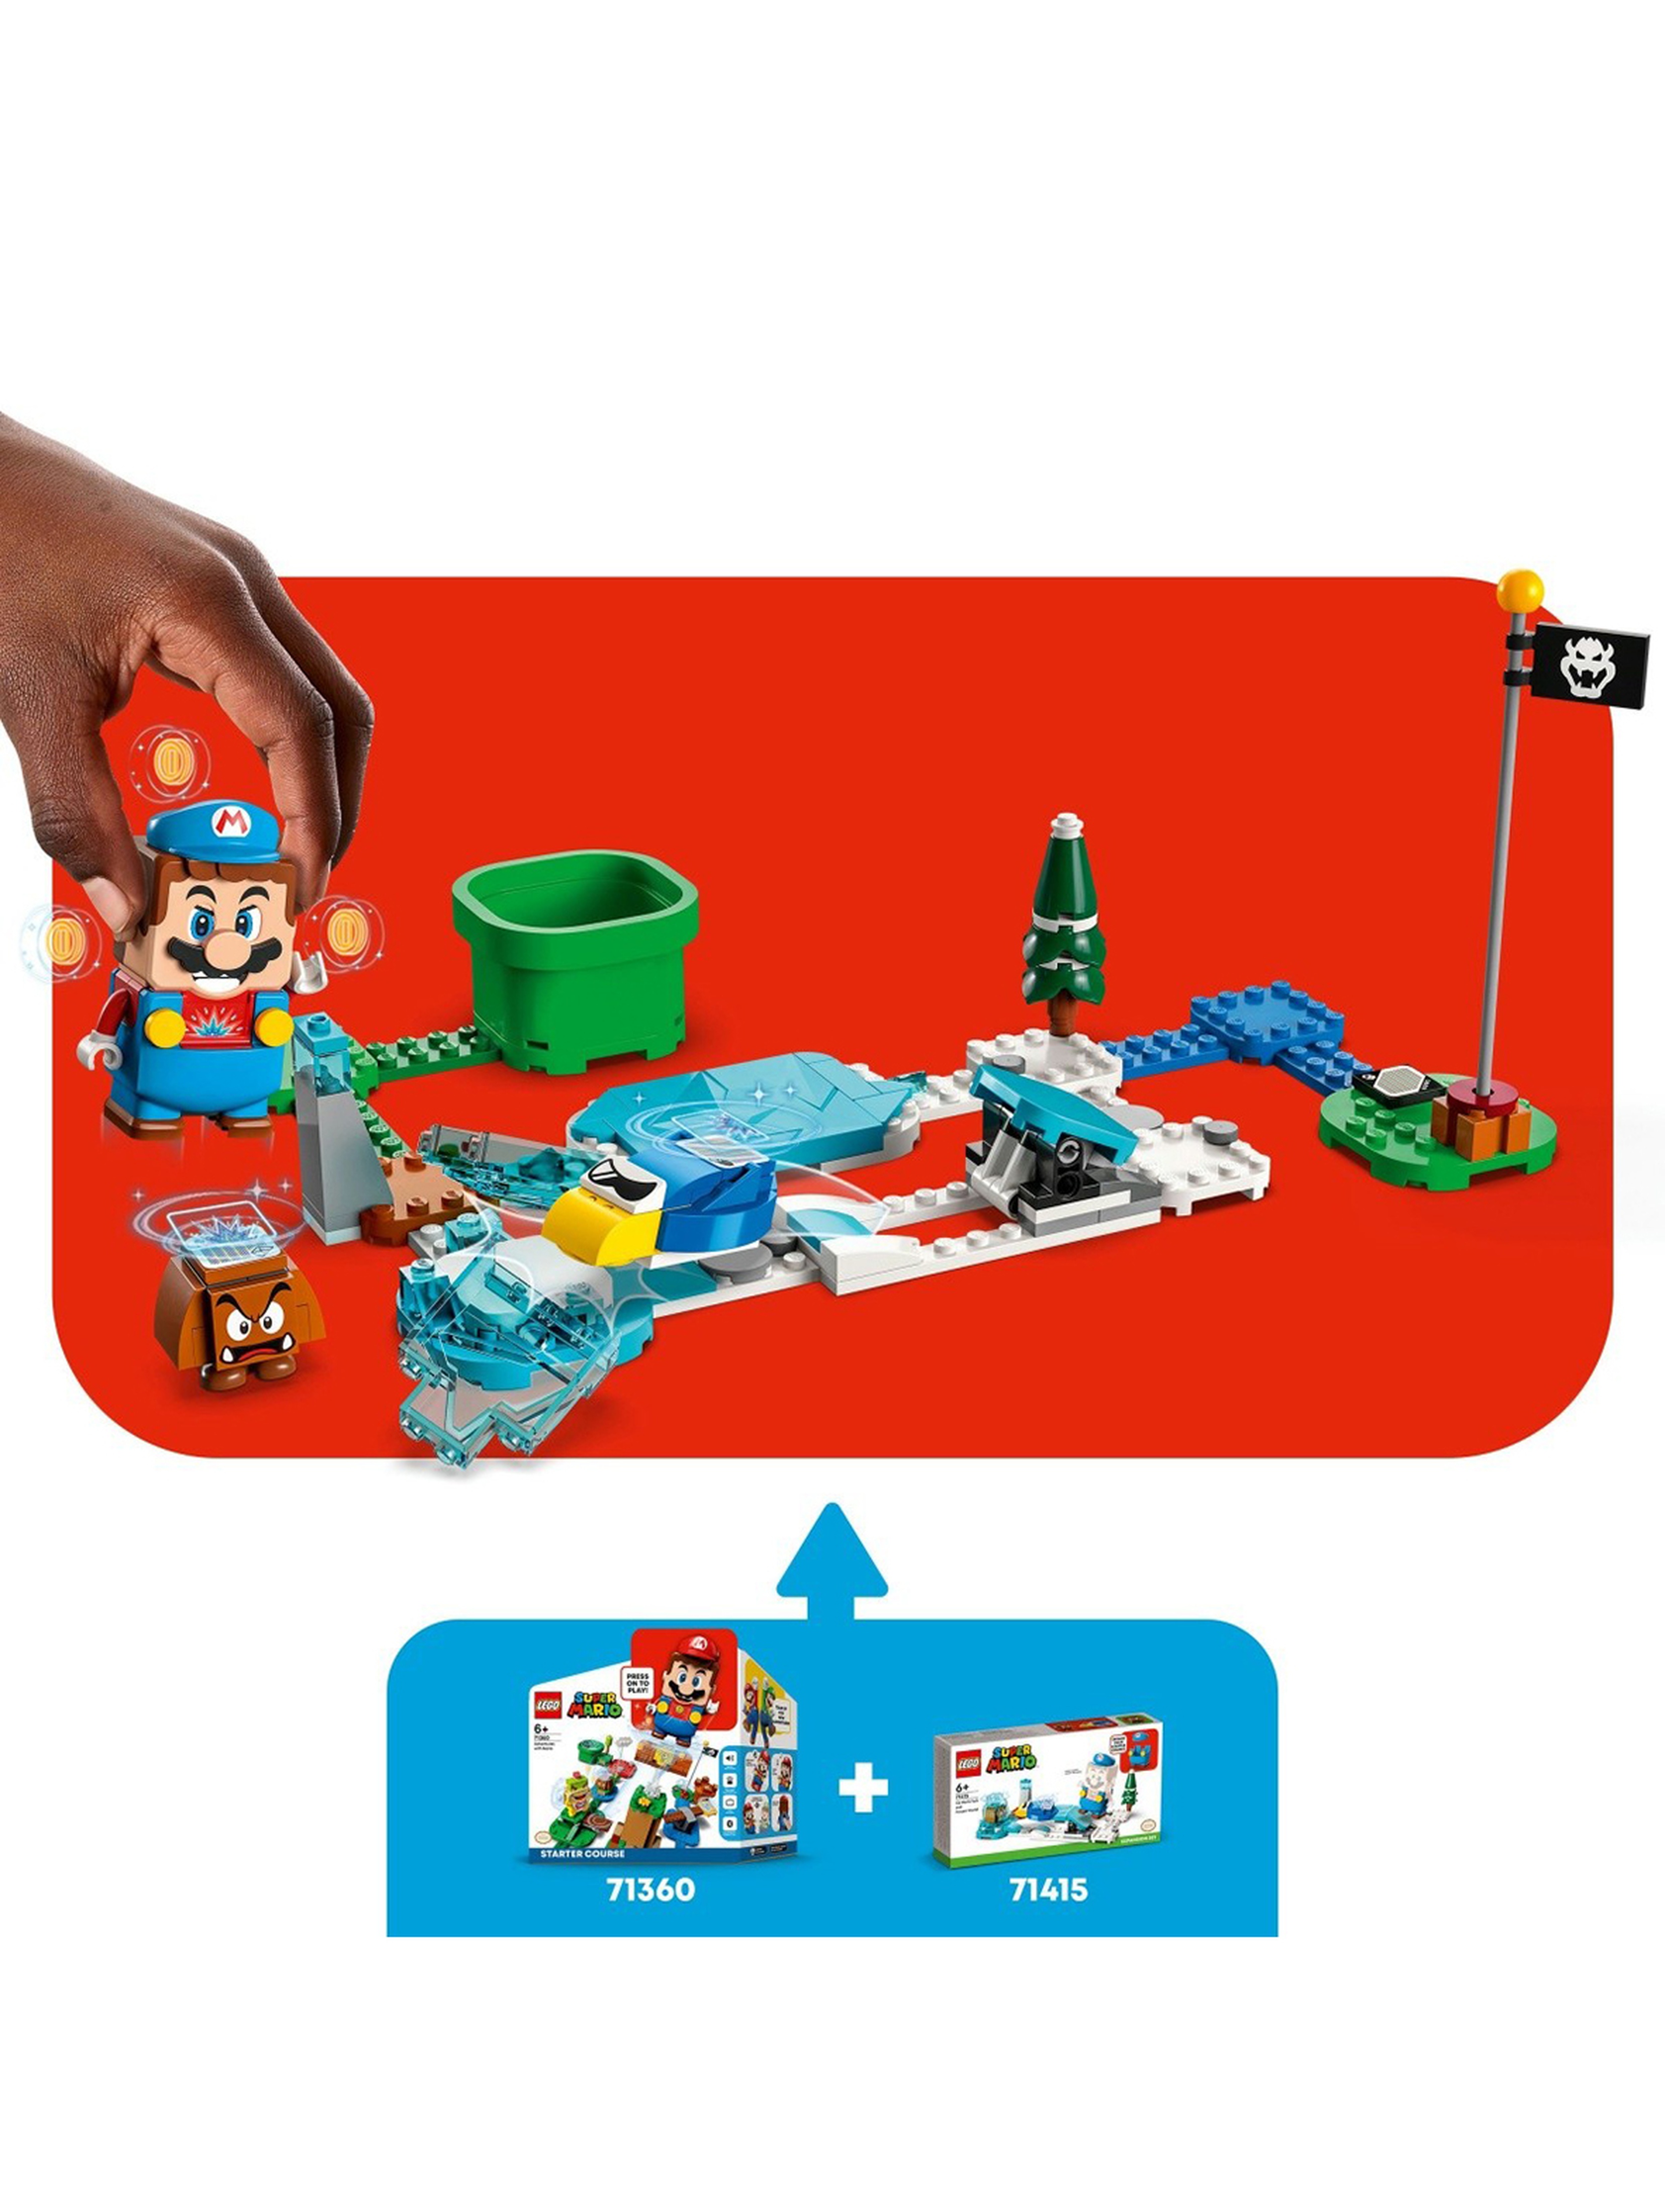 Klocki LEGO Super Mario 71415 Mario - lodowy strój i kraina lodu - zestaw rozszerzający - 105 elementów,wiek 6 +